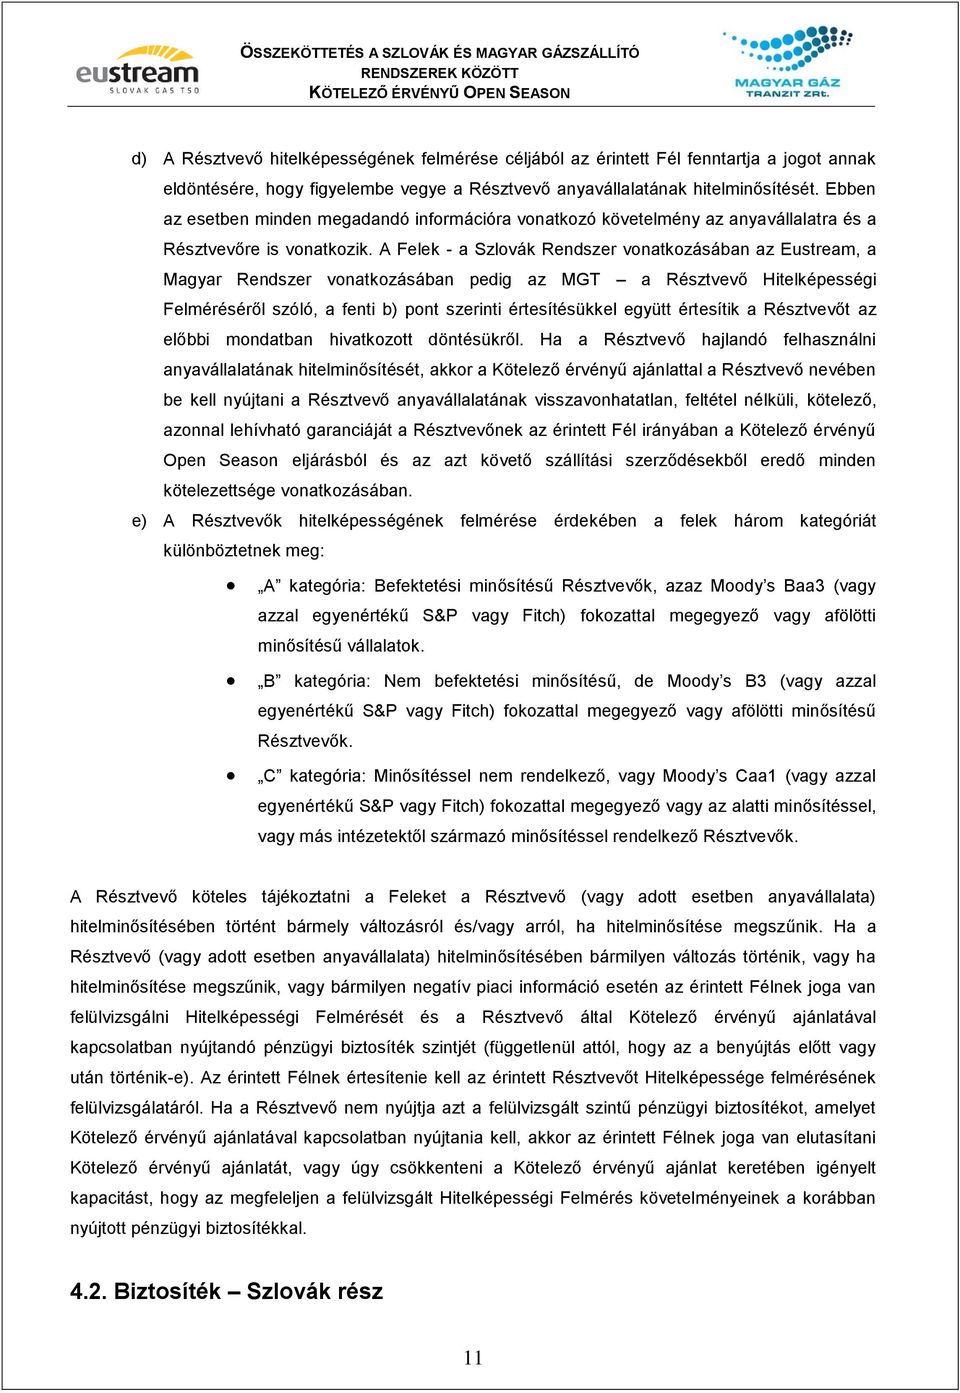 A Felek - a Szlovák Rendszer vonatkozásában az Eustream, a Magyar Rendszer vonatkozásában pedig az MGT a Résztvevő Hitelképességi Felméréséről szóló, a fenti b) pont szerinti értesítésükkel együtt